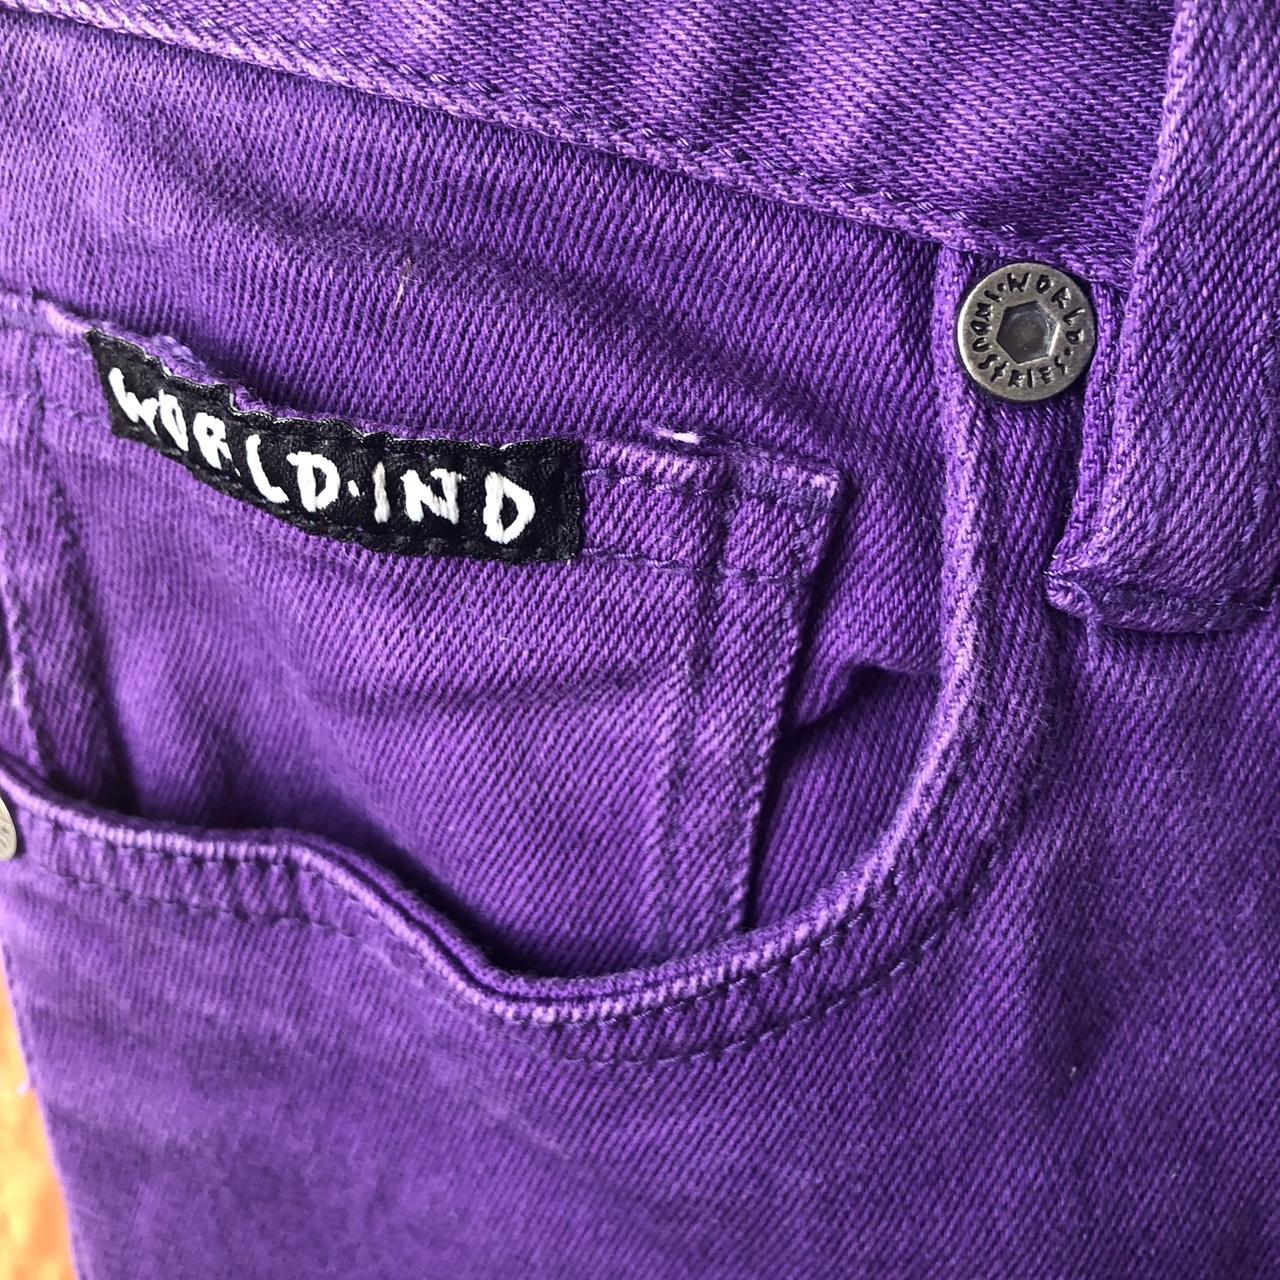 🟣⚪️World Industries Purple Skinny Jeans Size 16 Boys... - Depop